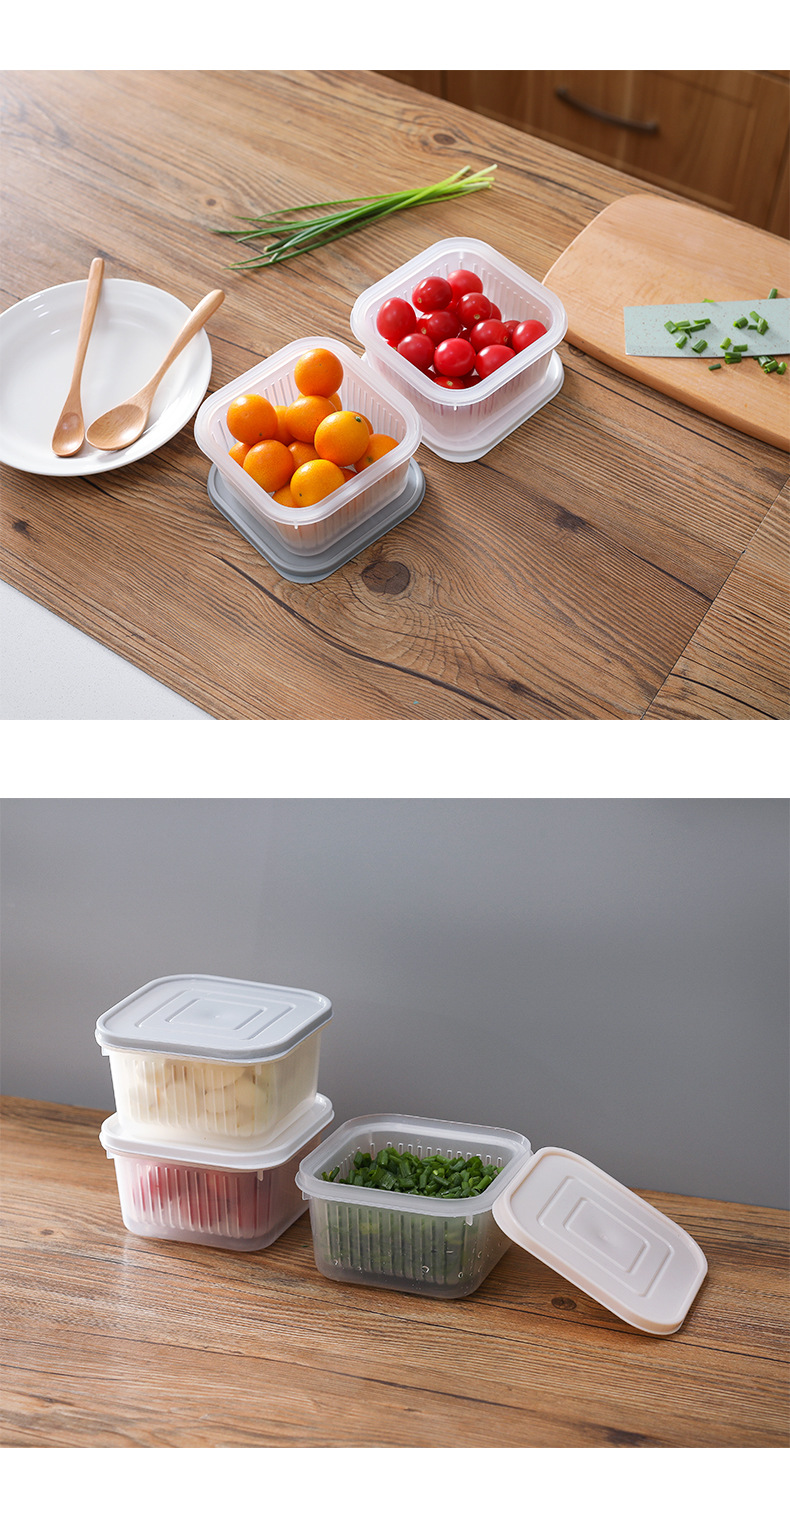 創意廚房雙層瀝水保鮮盒 廚房蔬果保鮮收納盒 冰箱食物保鮮盒8